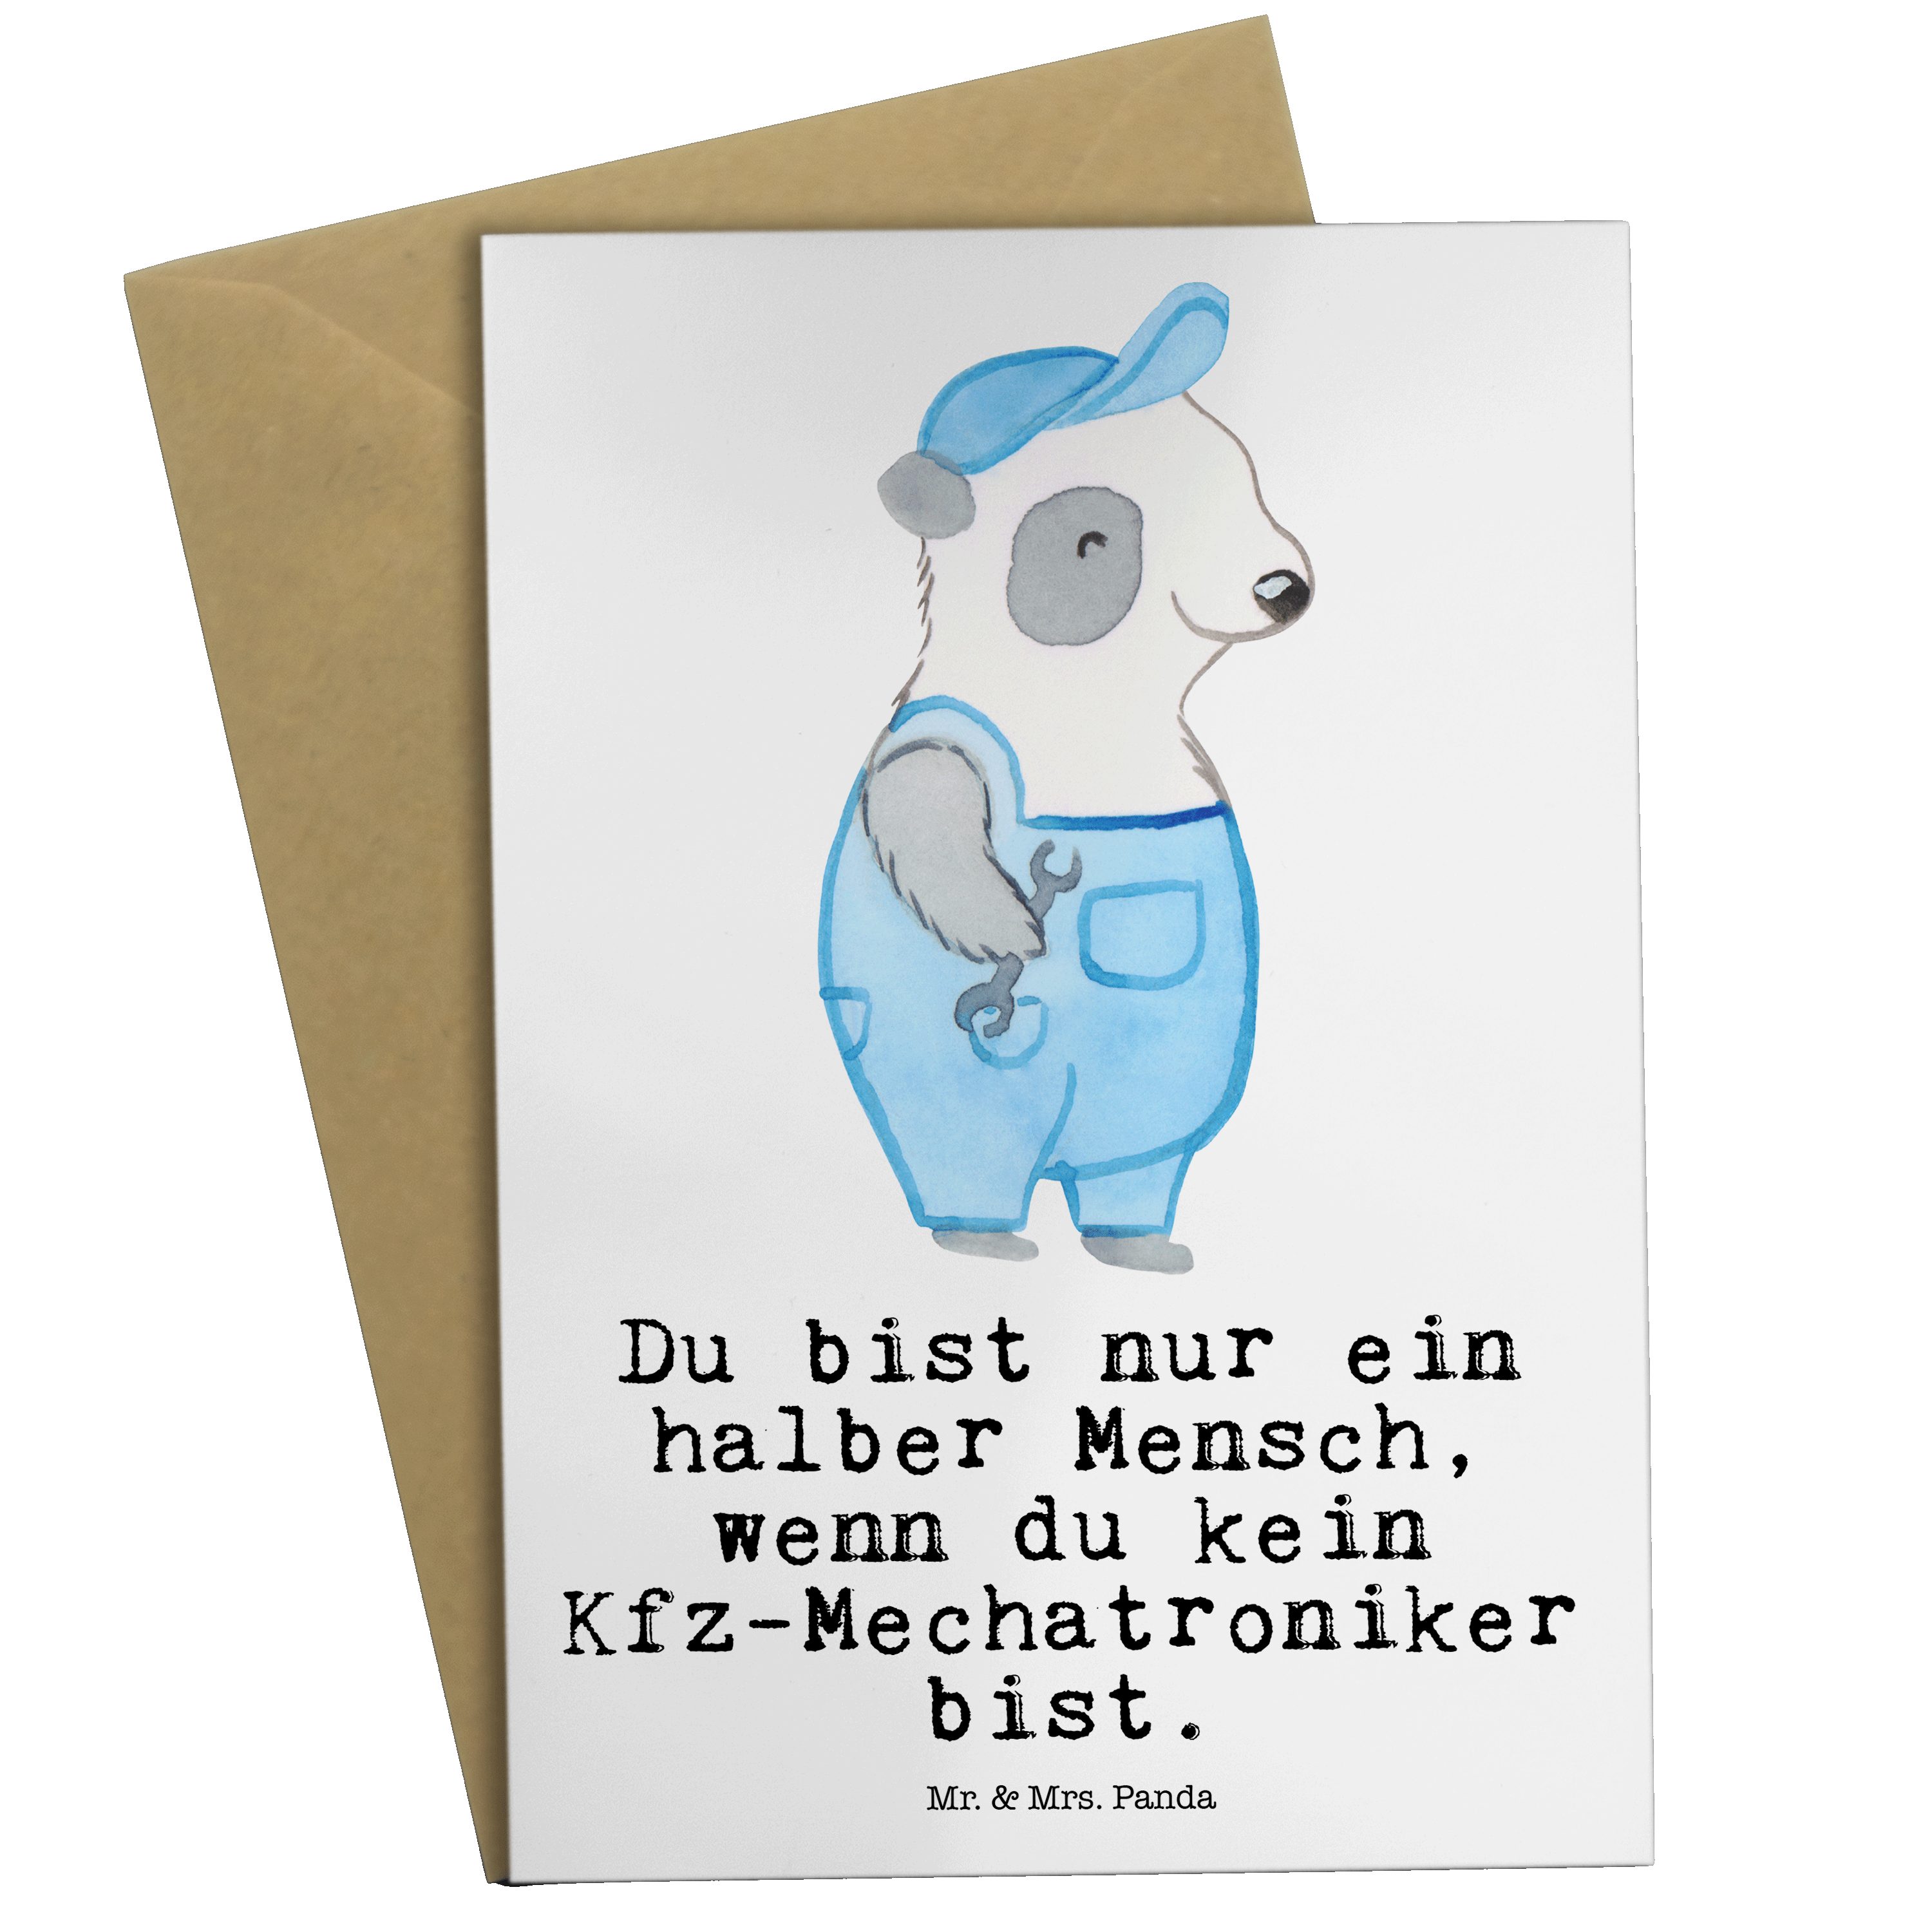 Mr. & Mrs. Panda Grußkarte Kfz-Mechatroniker mit Herz - Weiß - Geschenk, Kollegin, Werktstatt, K